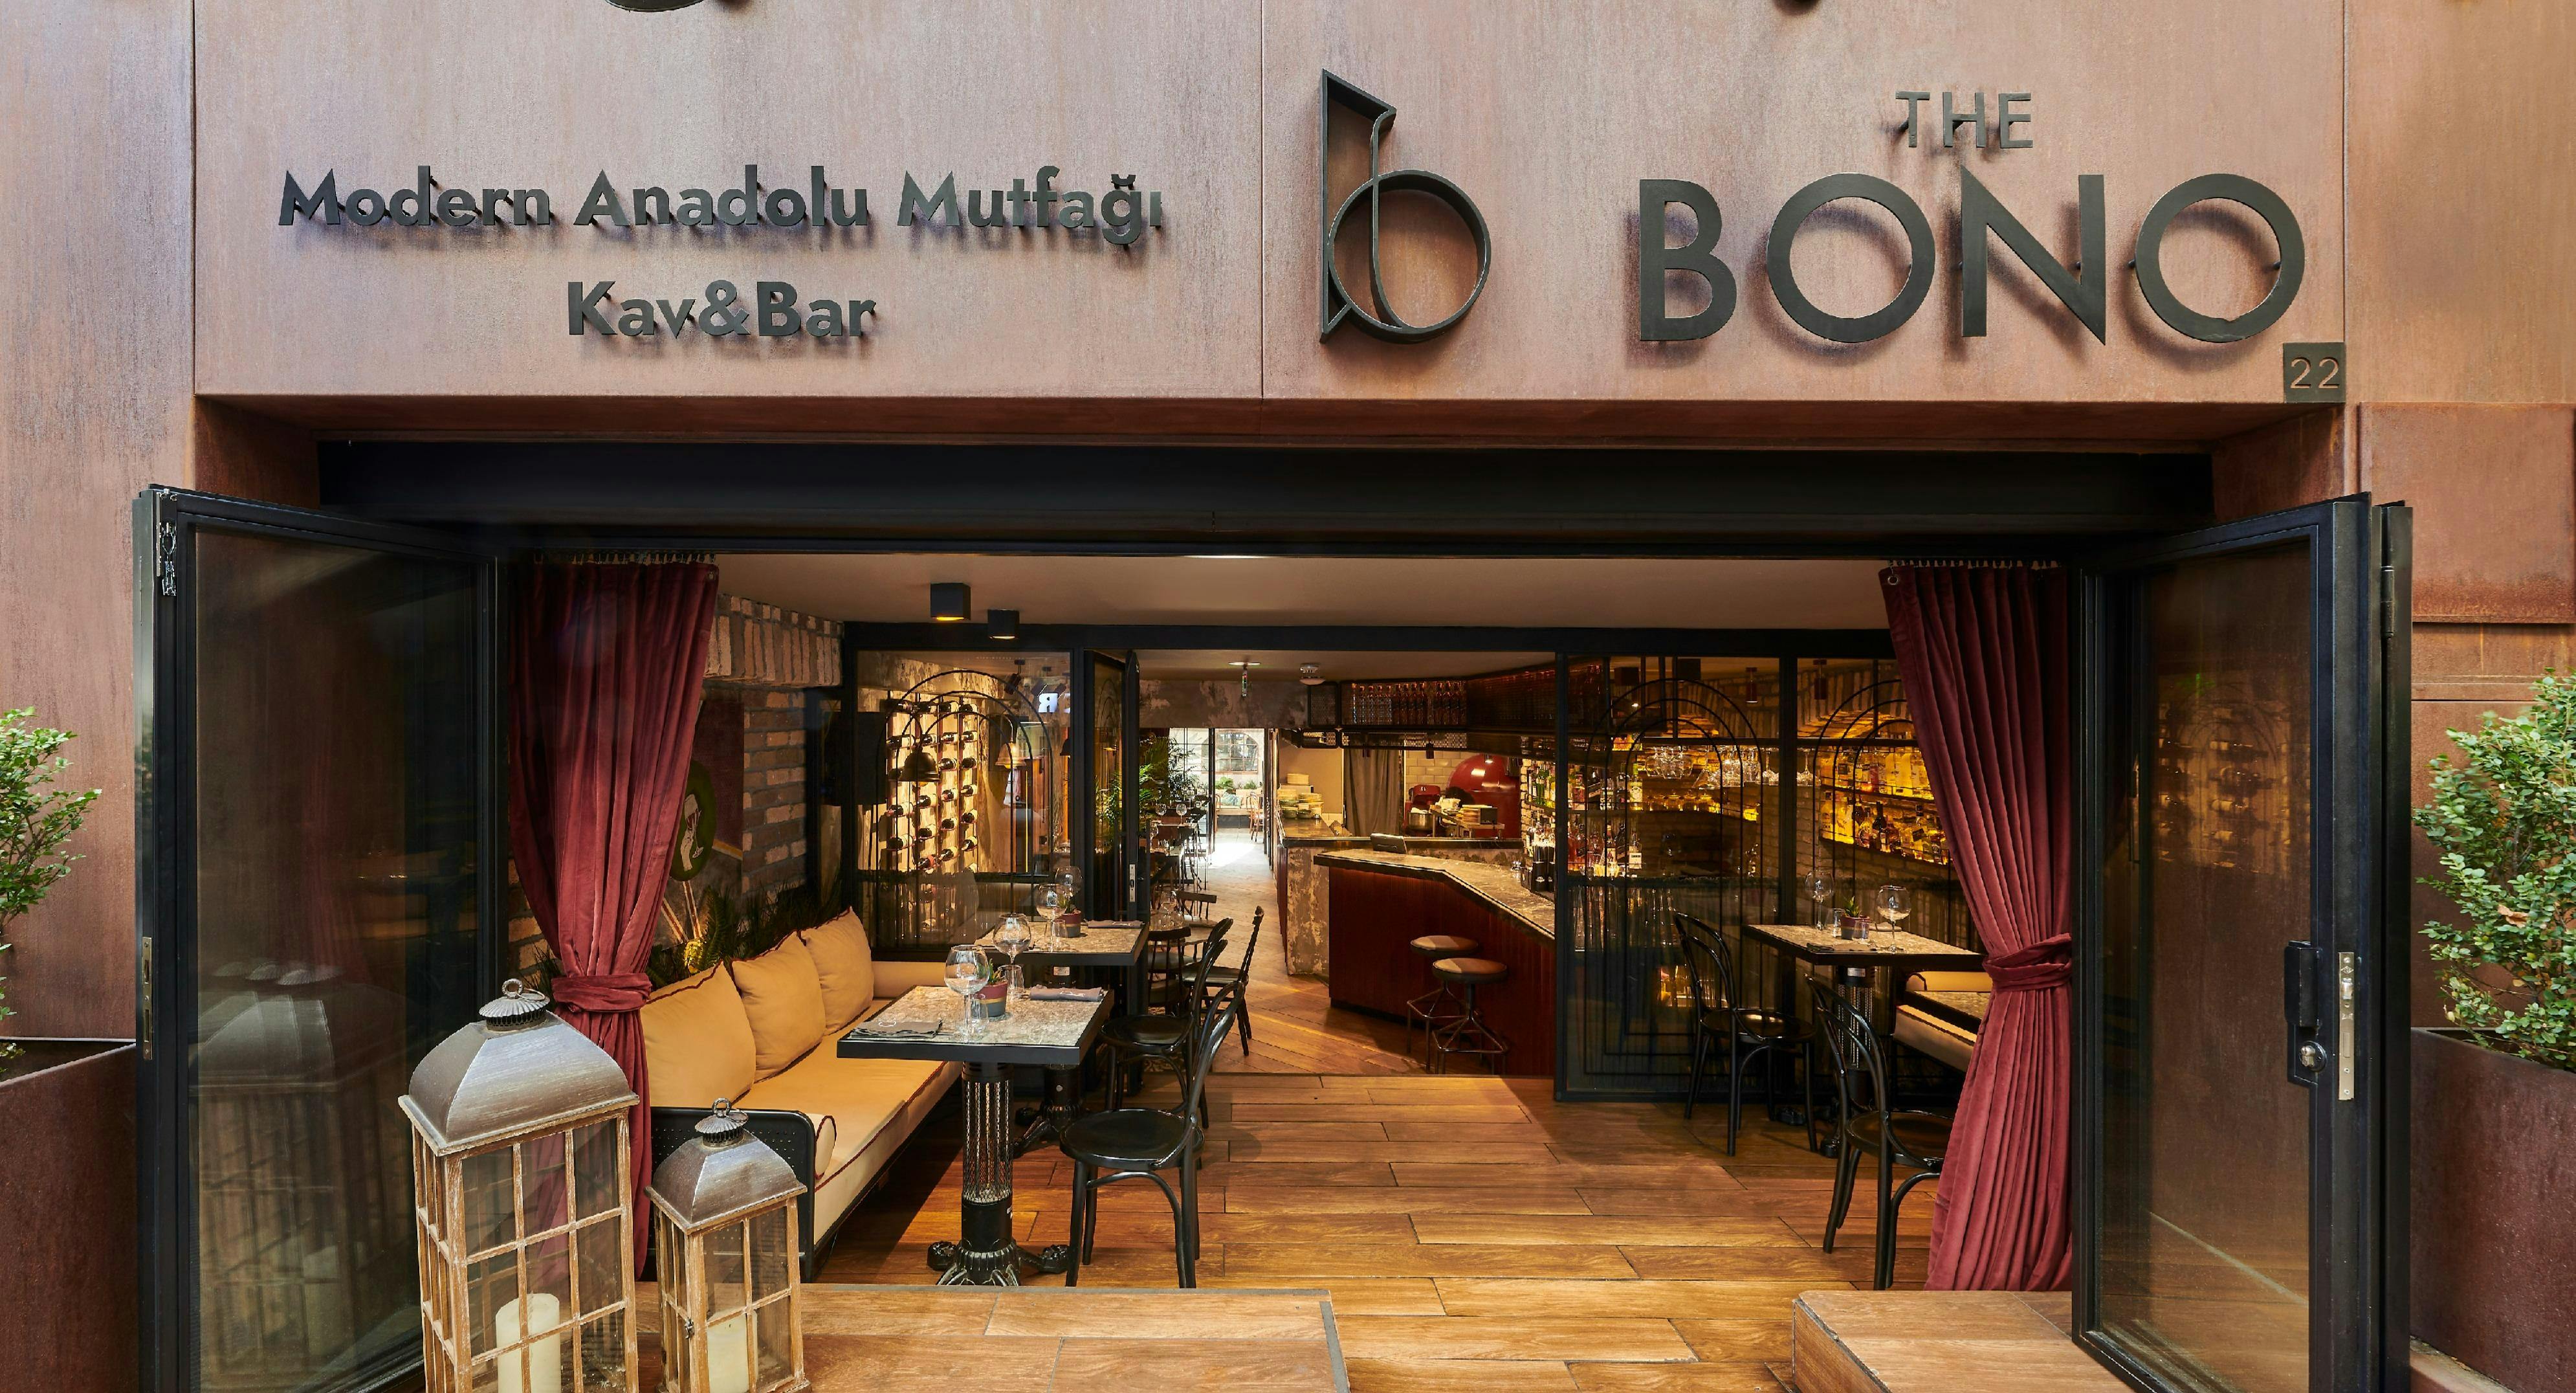 Nişantaşı, Istanbul şehrindeki The Bono restoranının fotoğrafı